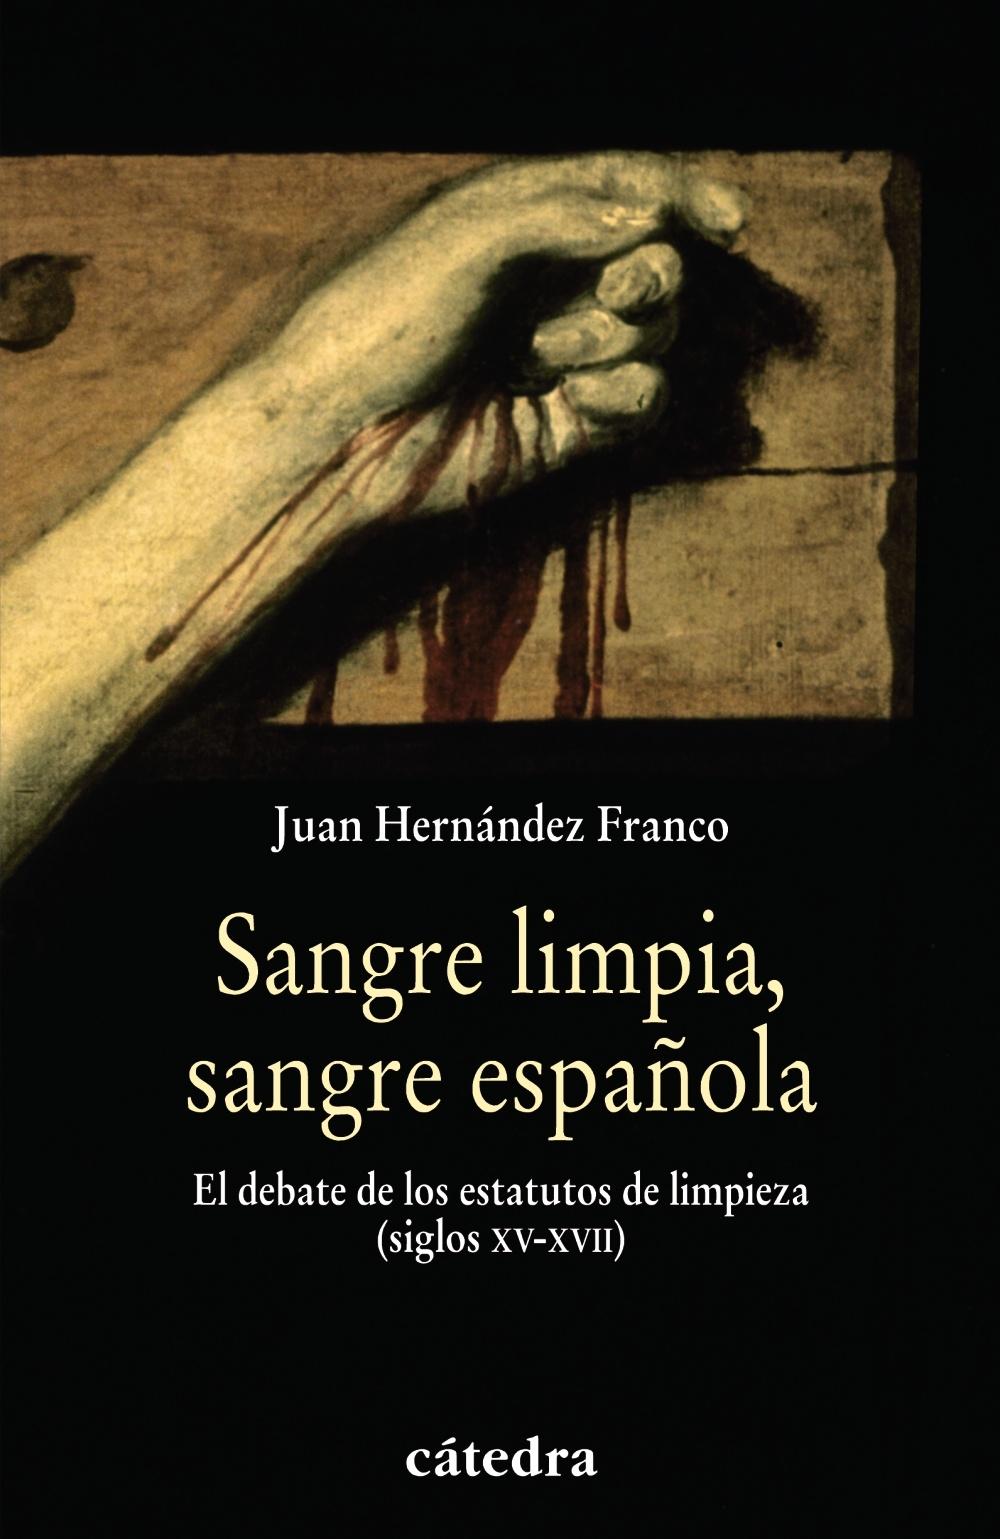 Sangre limpia, sangre española "El debate de los estatutos de limpieza (siglos XV-XVII)". 